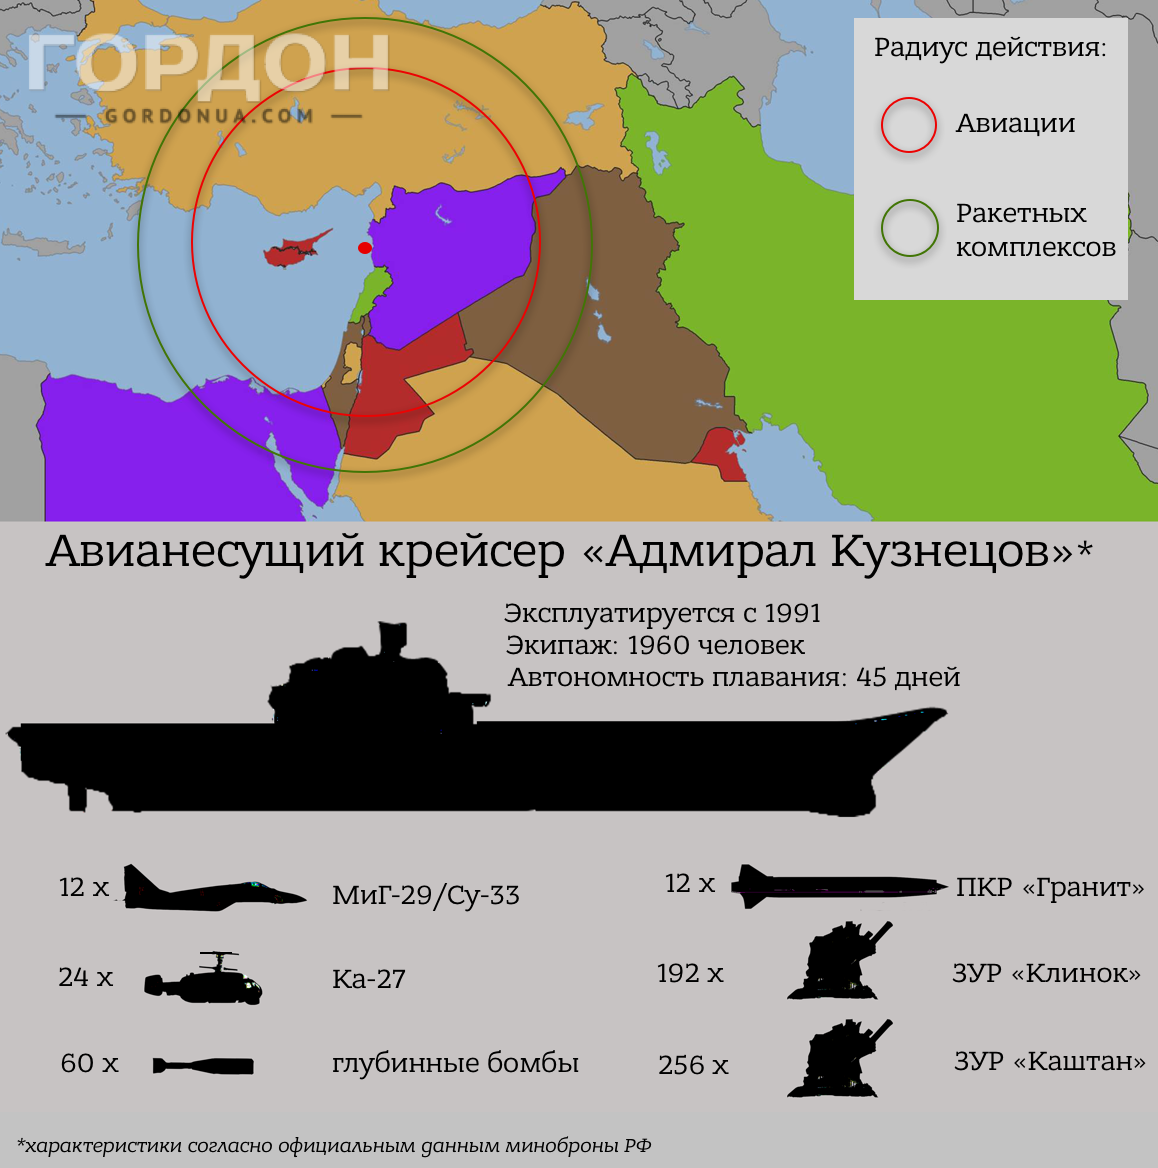 Основные характеристики авианосца "Адмирал Кузнецов"